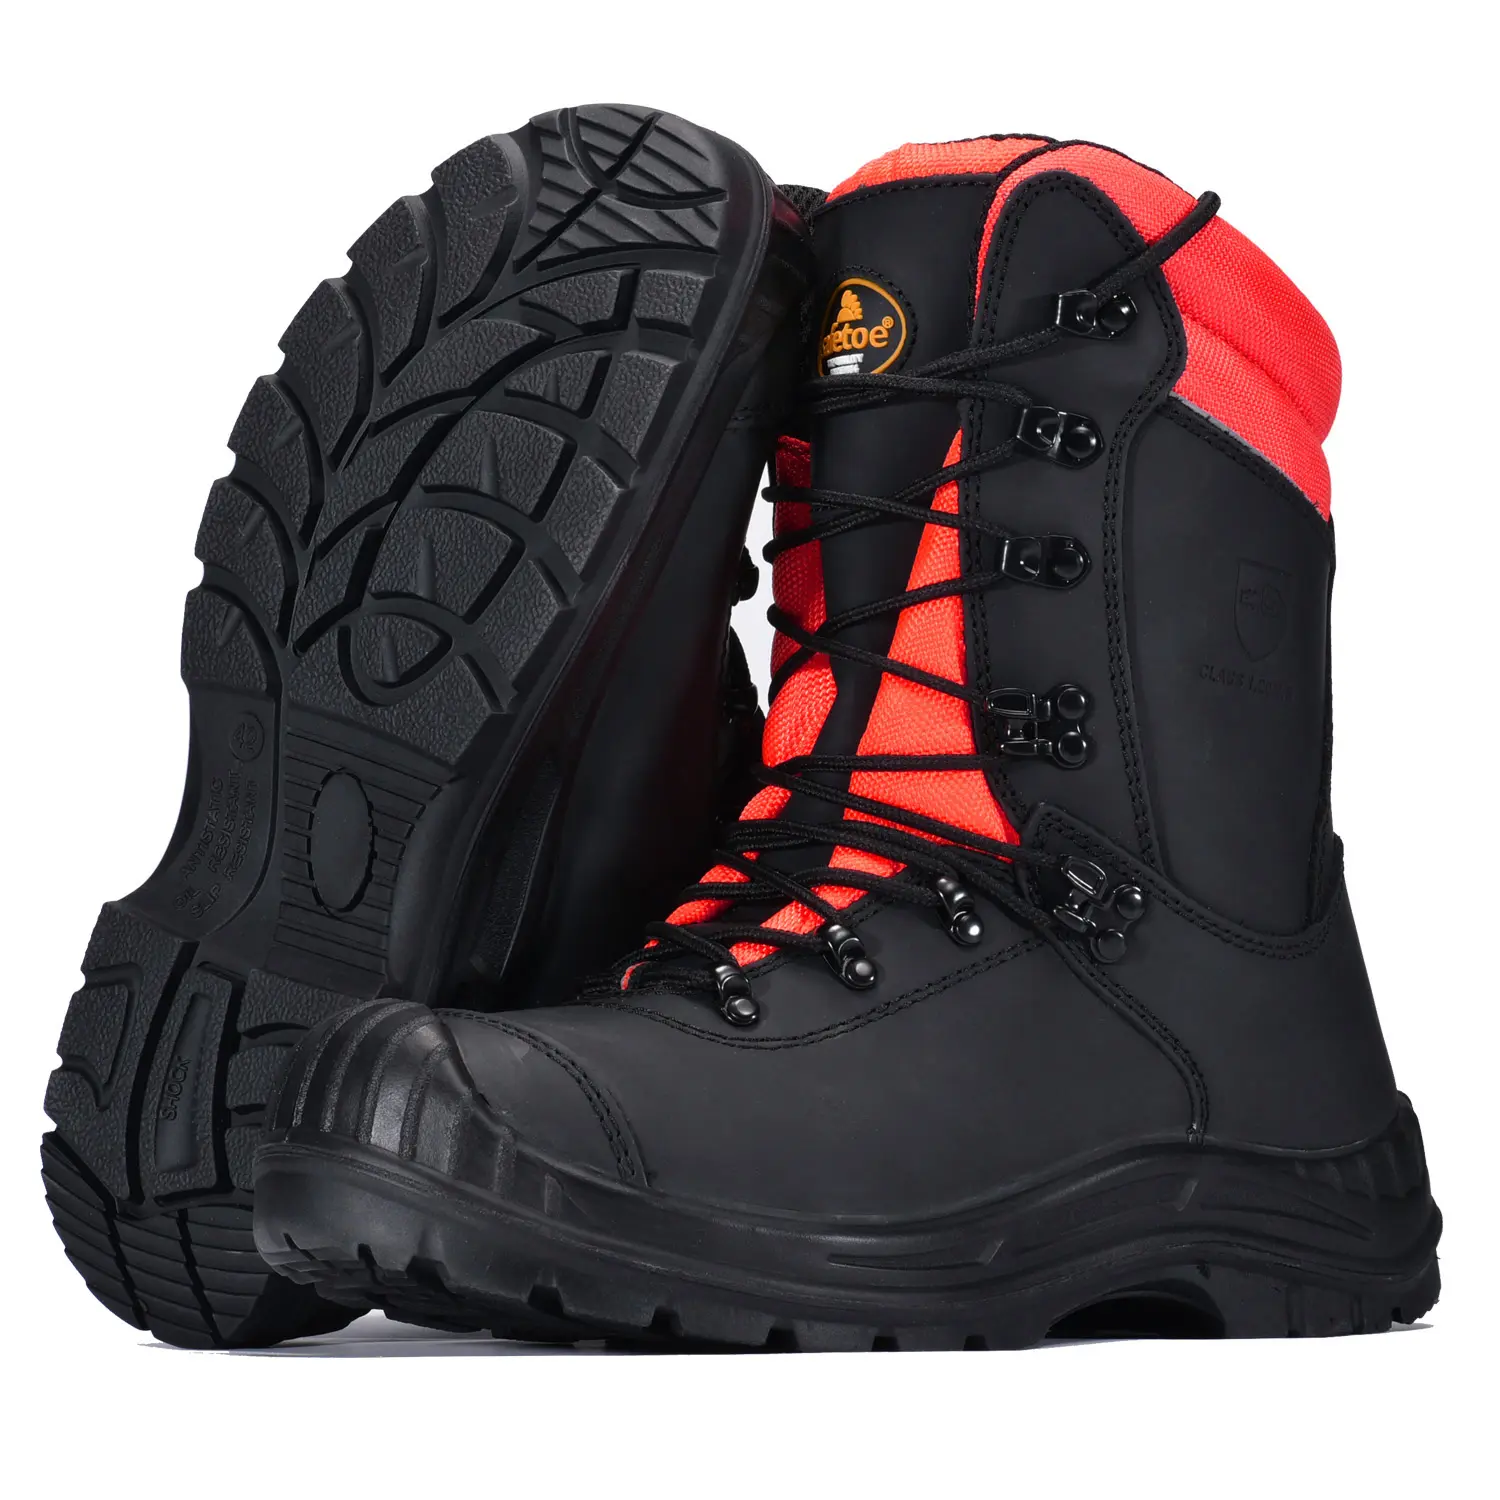 スチールトゥ防水ブラックフォレストレンジャー安全靴プルオンロガースタイルの男性用ワークブーツ